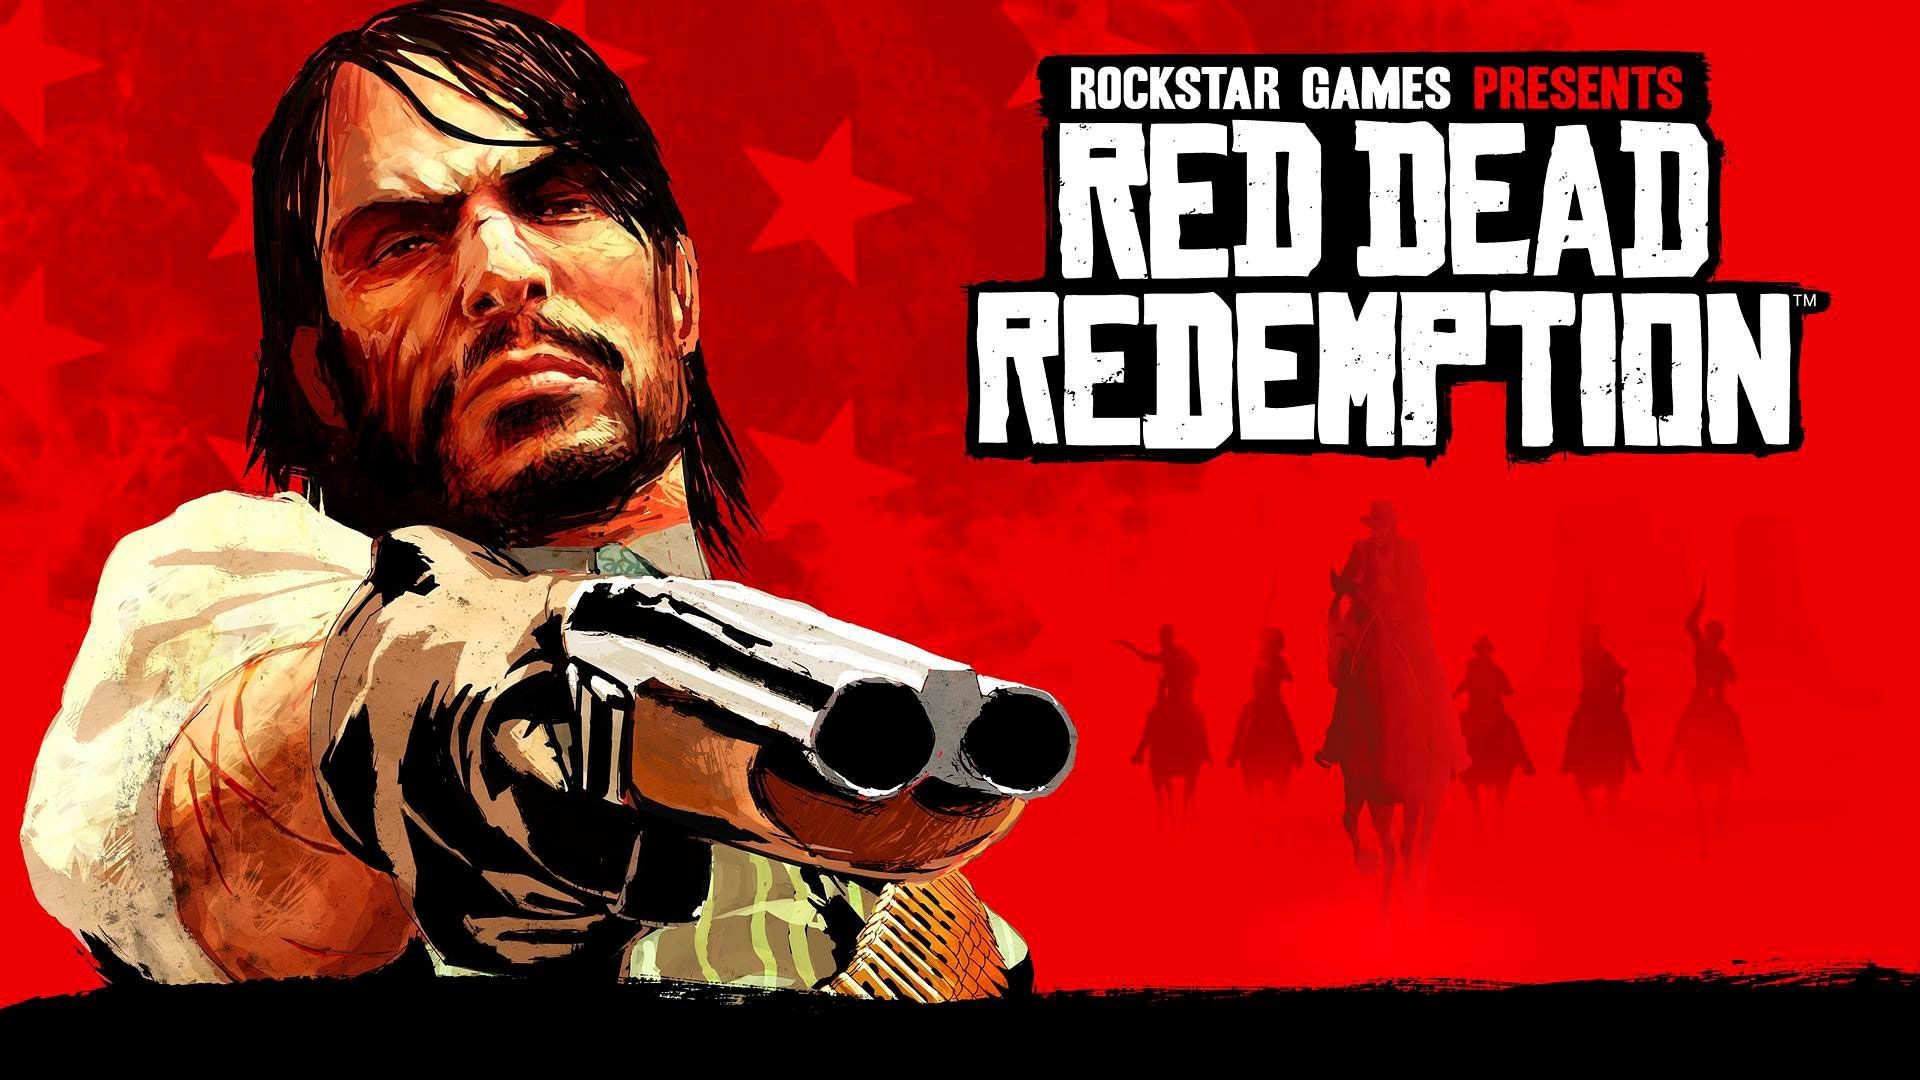 Red Dead Redemption Kapak Fotoğrafı.jpg